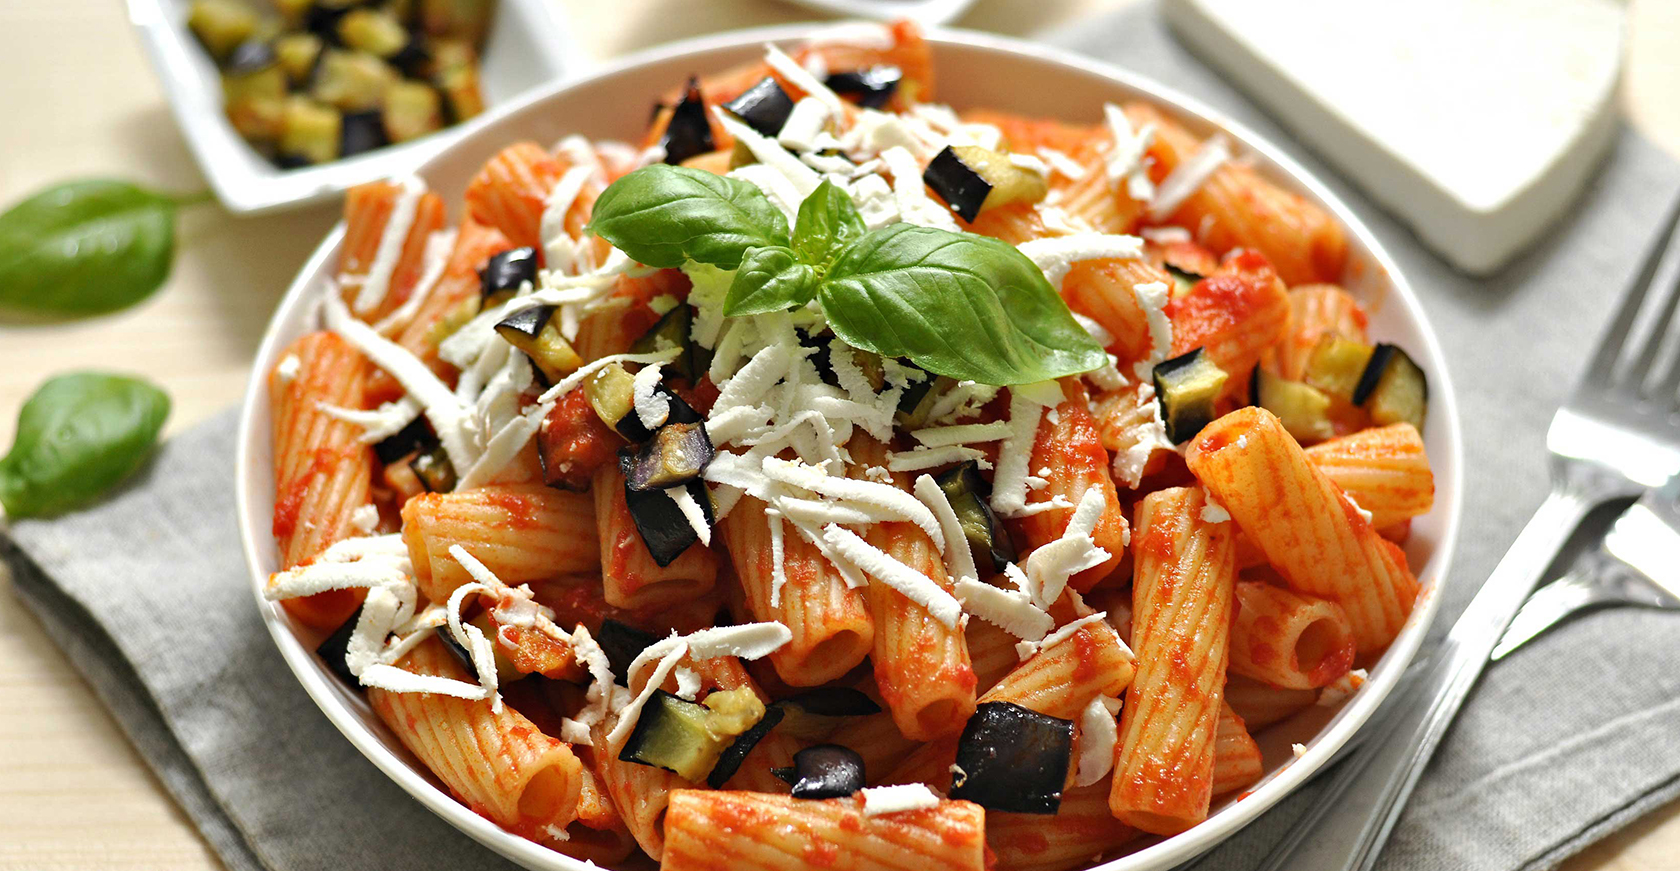 طرز تهیه پاستای ایتالیایی اصیل؛ پاستا ایتالیایی پنه ساده سبزیجات با سس مخصوص